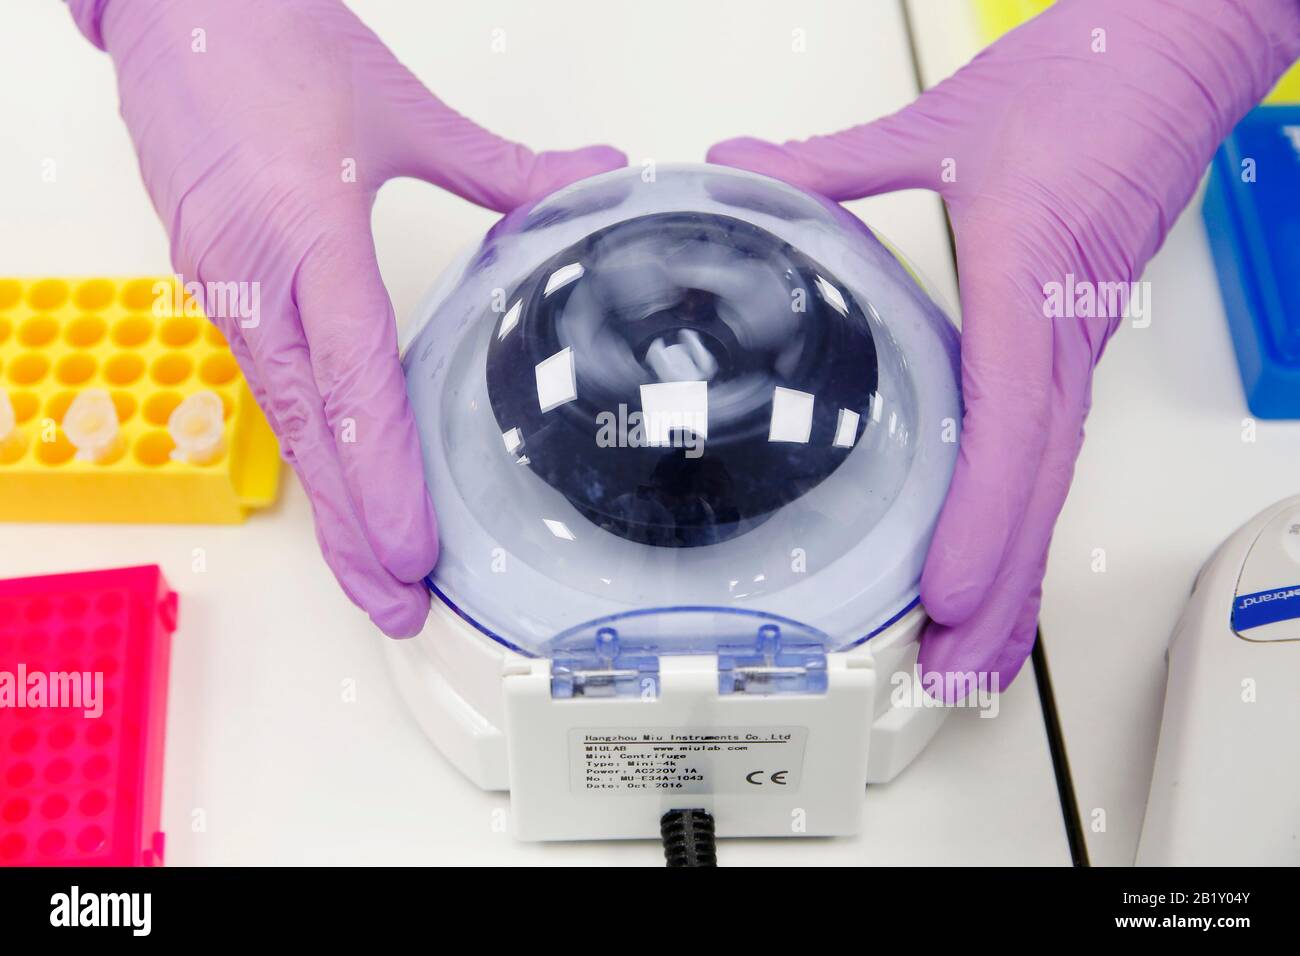 Un científico utiliza una centrífuga para fabricar rda sintético, que forma parte del kit de detección Coronavirus COVID-19, en las oficinas y laboratorios de Primerdesign de Chandler' Foto de stock